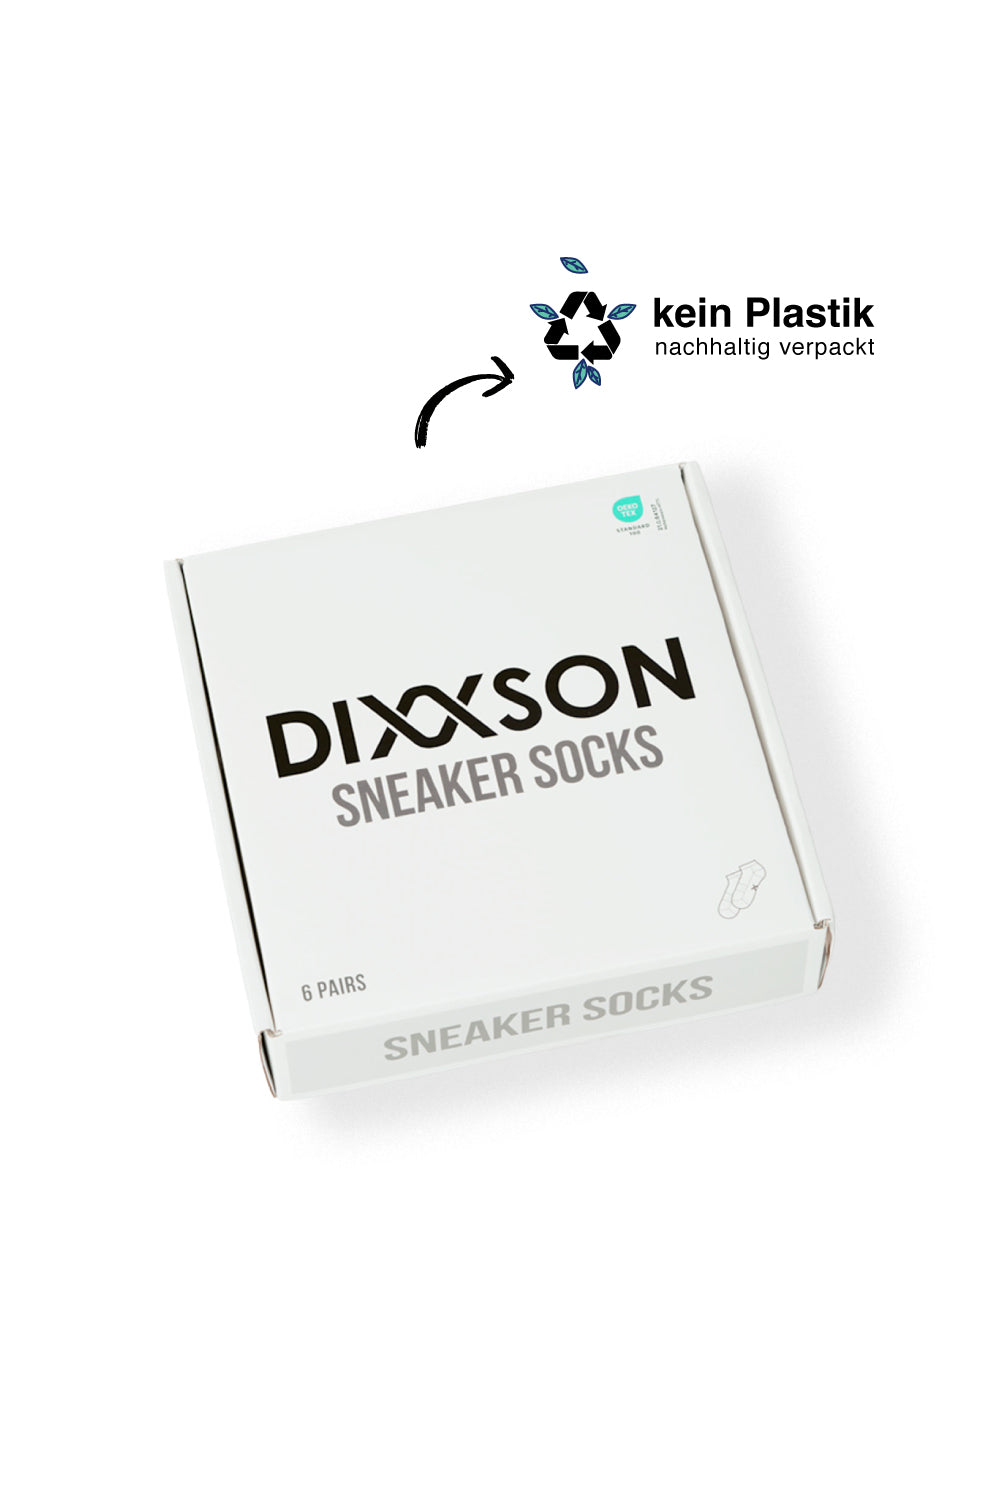 DIXXSON Sneaker Socken - Umweltfreundliche Verpackung - kein Plastik